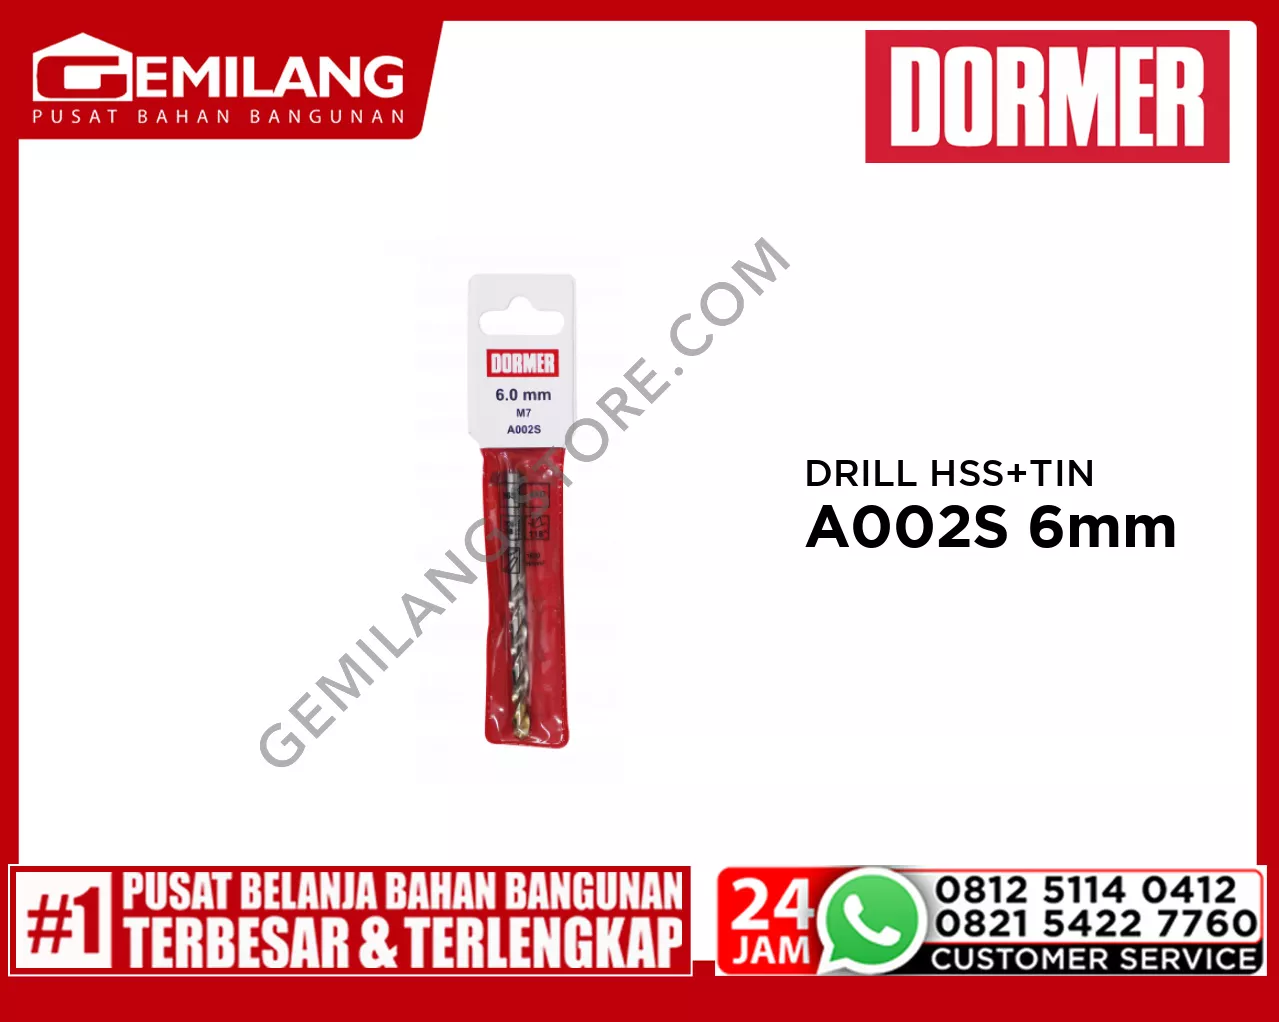 DORMER DRILL (POUCH) HSS + TIN A002S 6mm